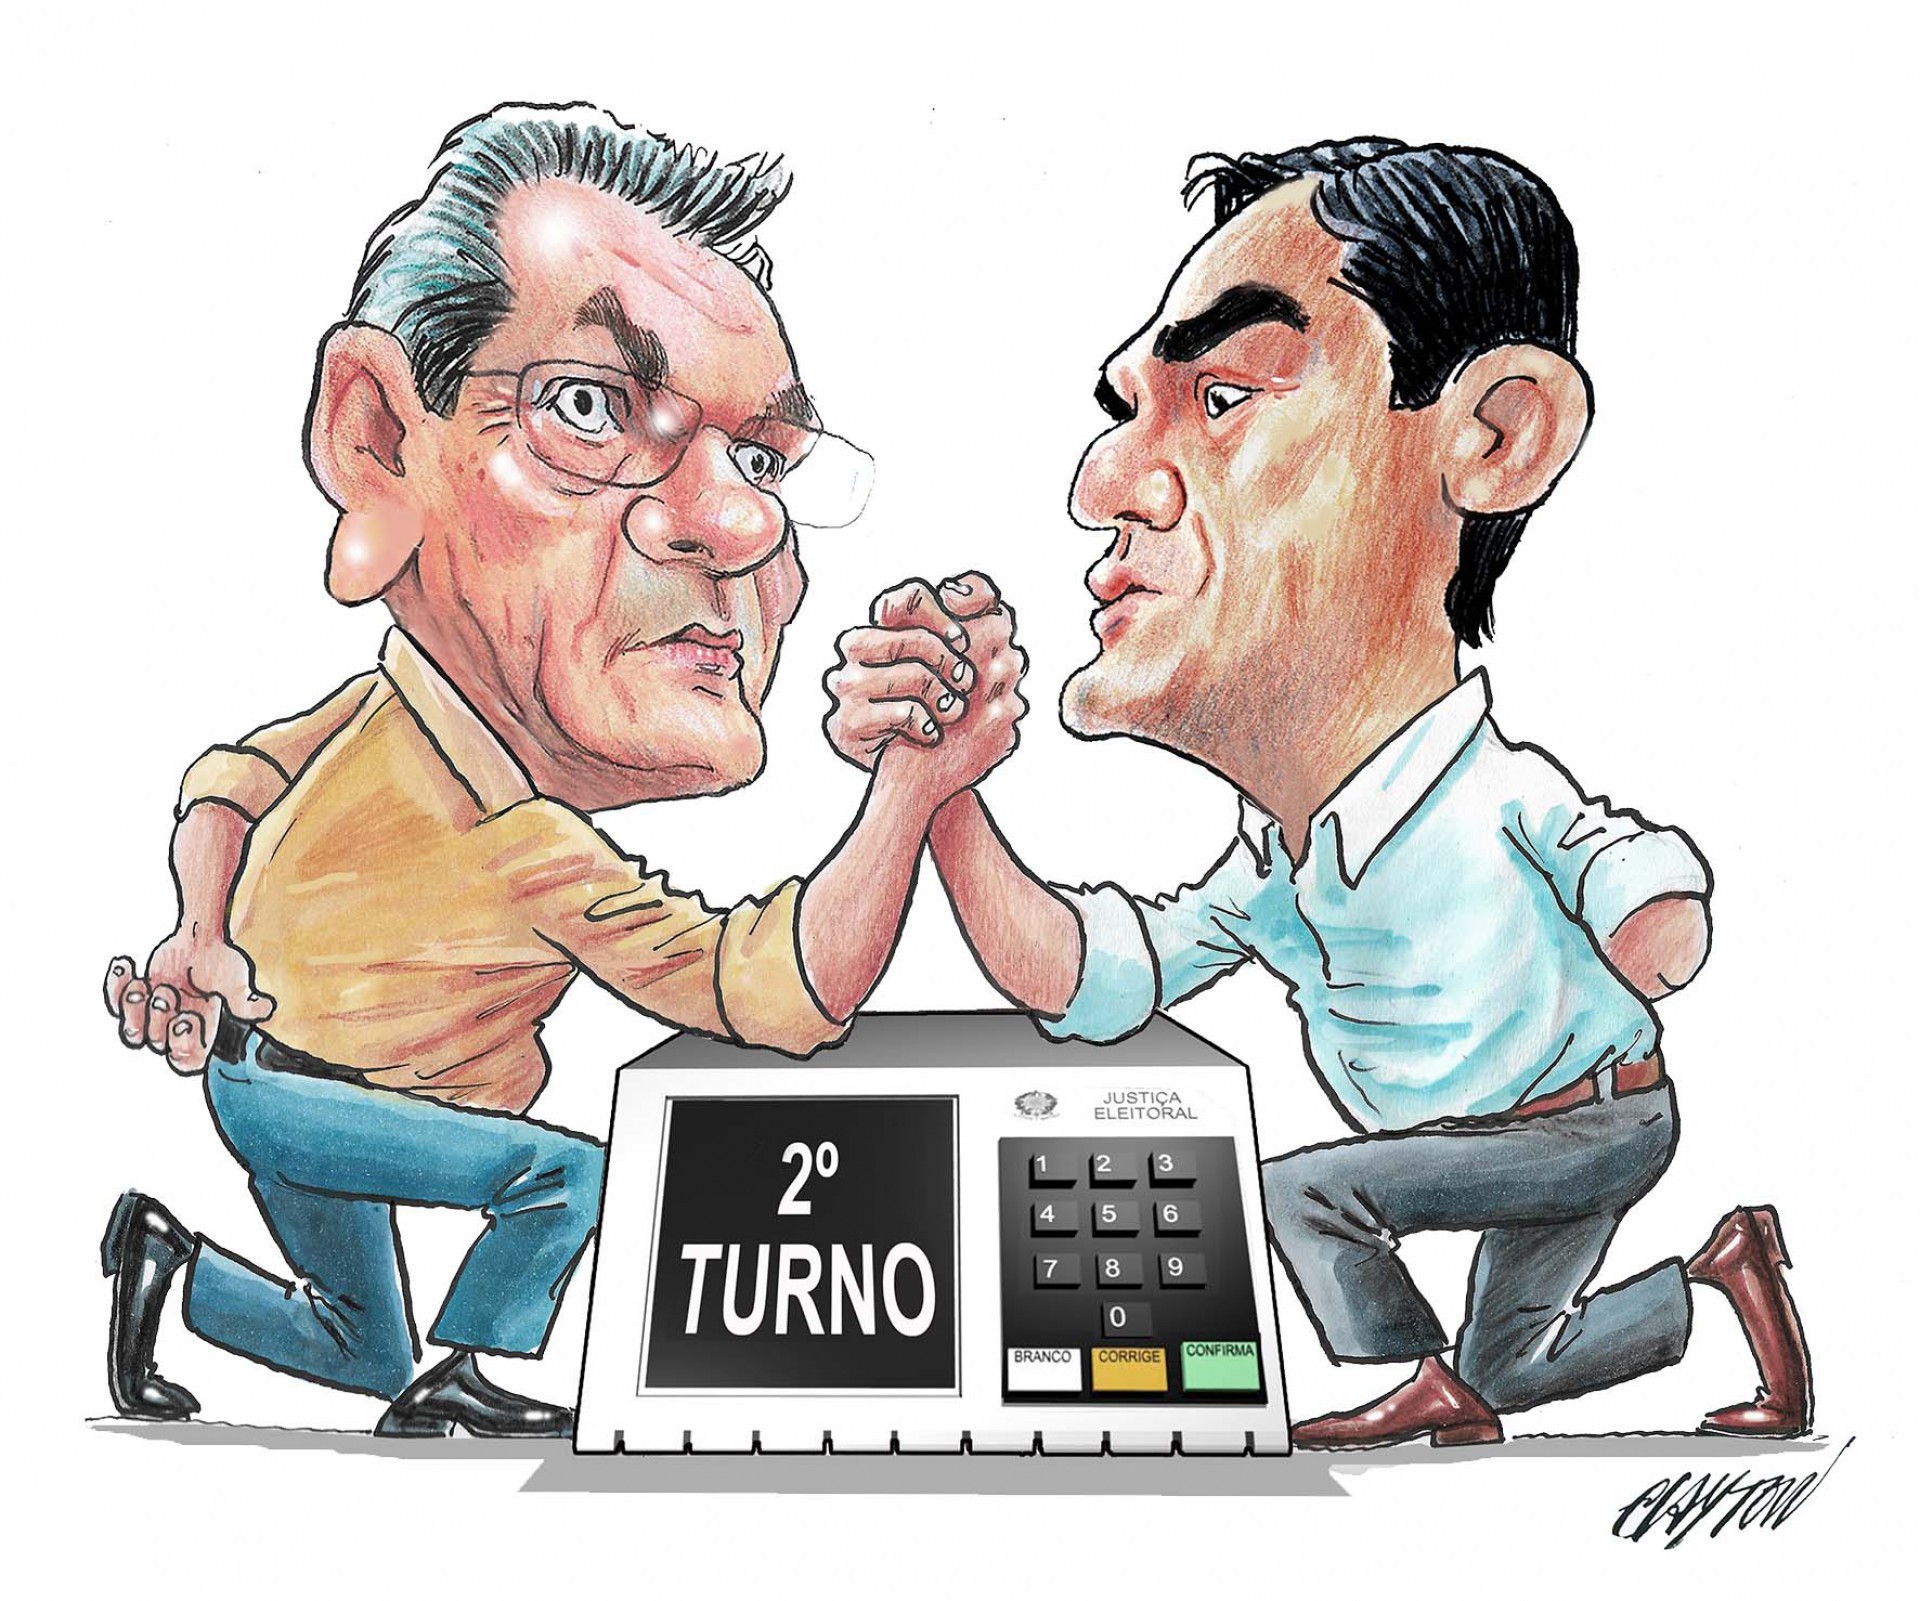 Sarto e Capitão Wagner disputam 2º turno em Fortaleza nas eleições 2020 (Foto: CHARGE: CLAYTON)